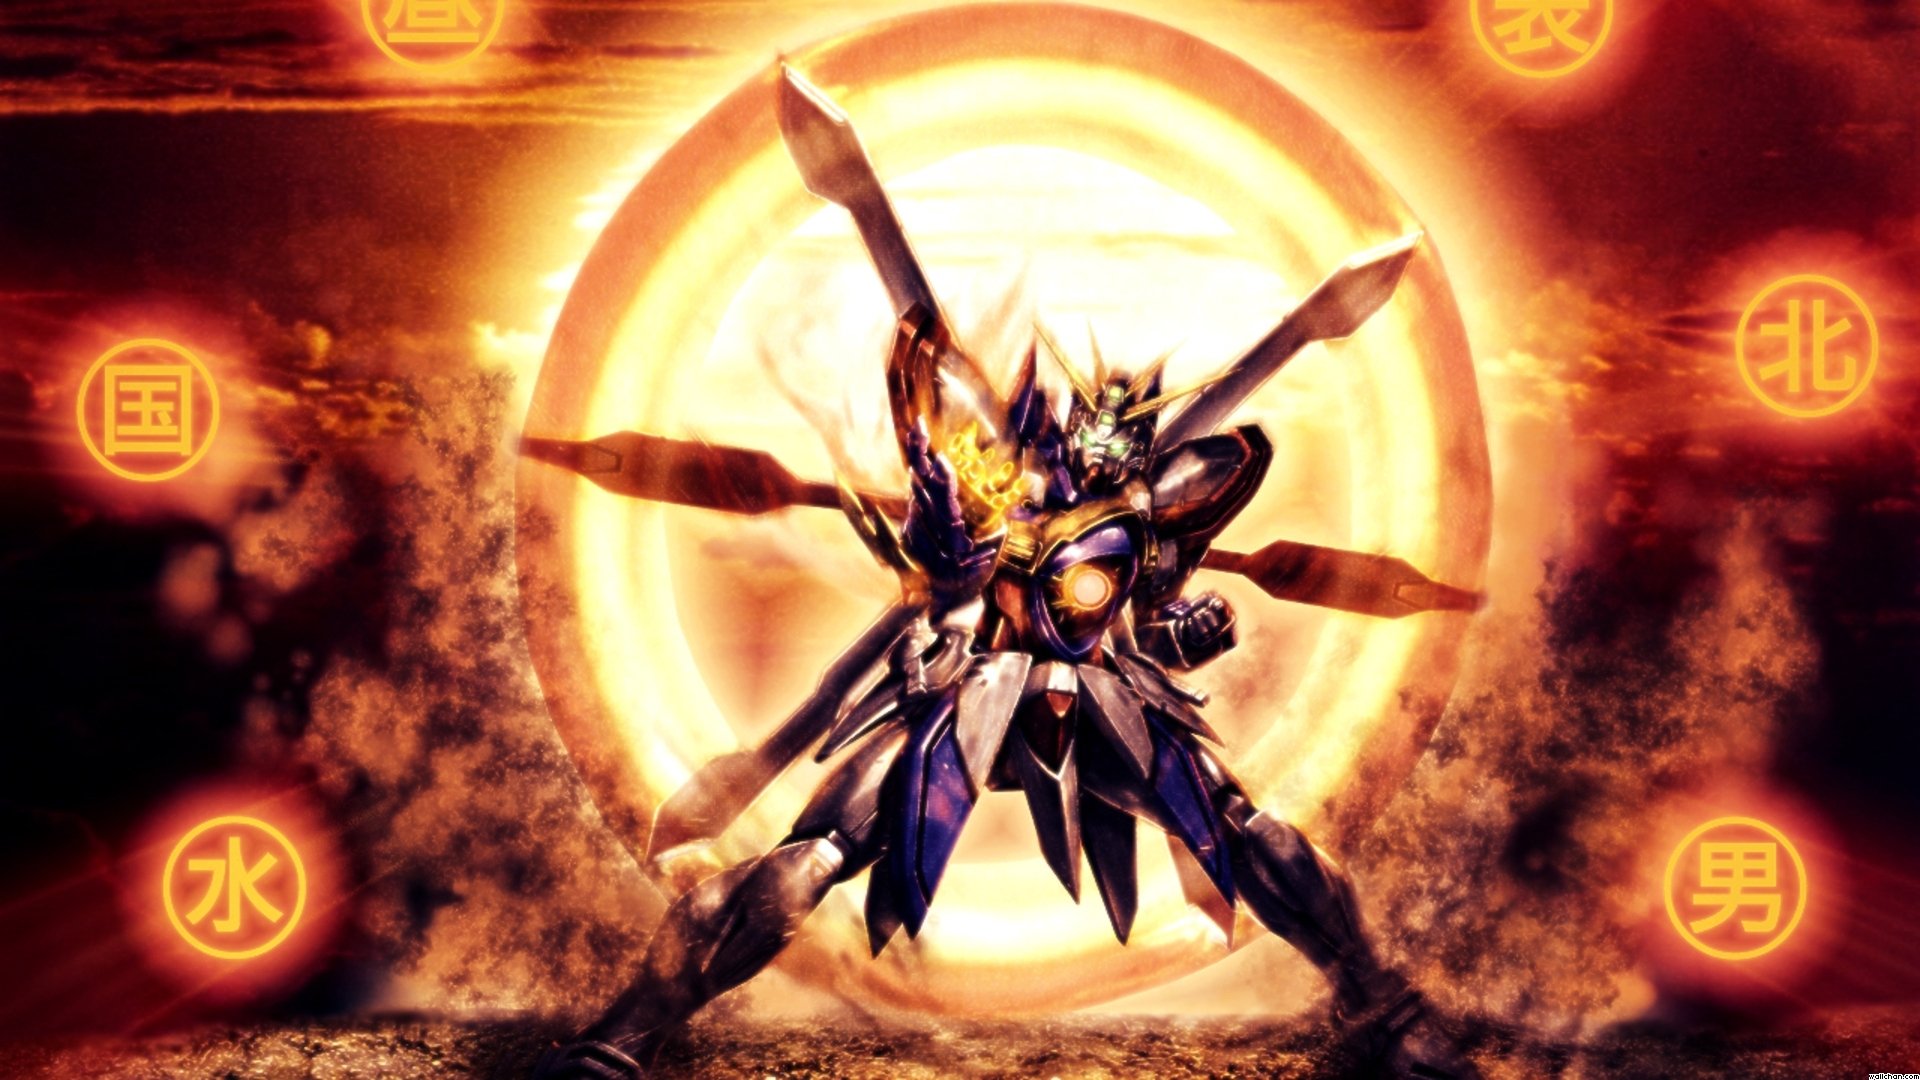 God Gundam by Hawk of Endymion